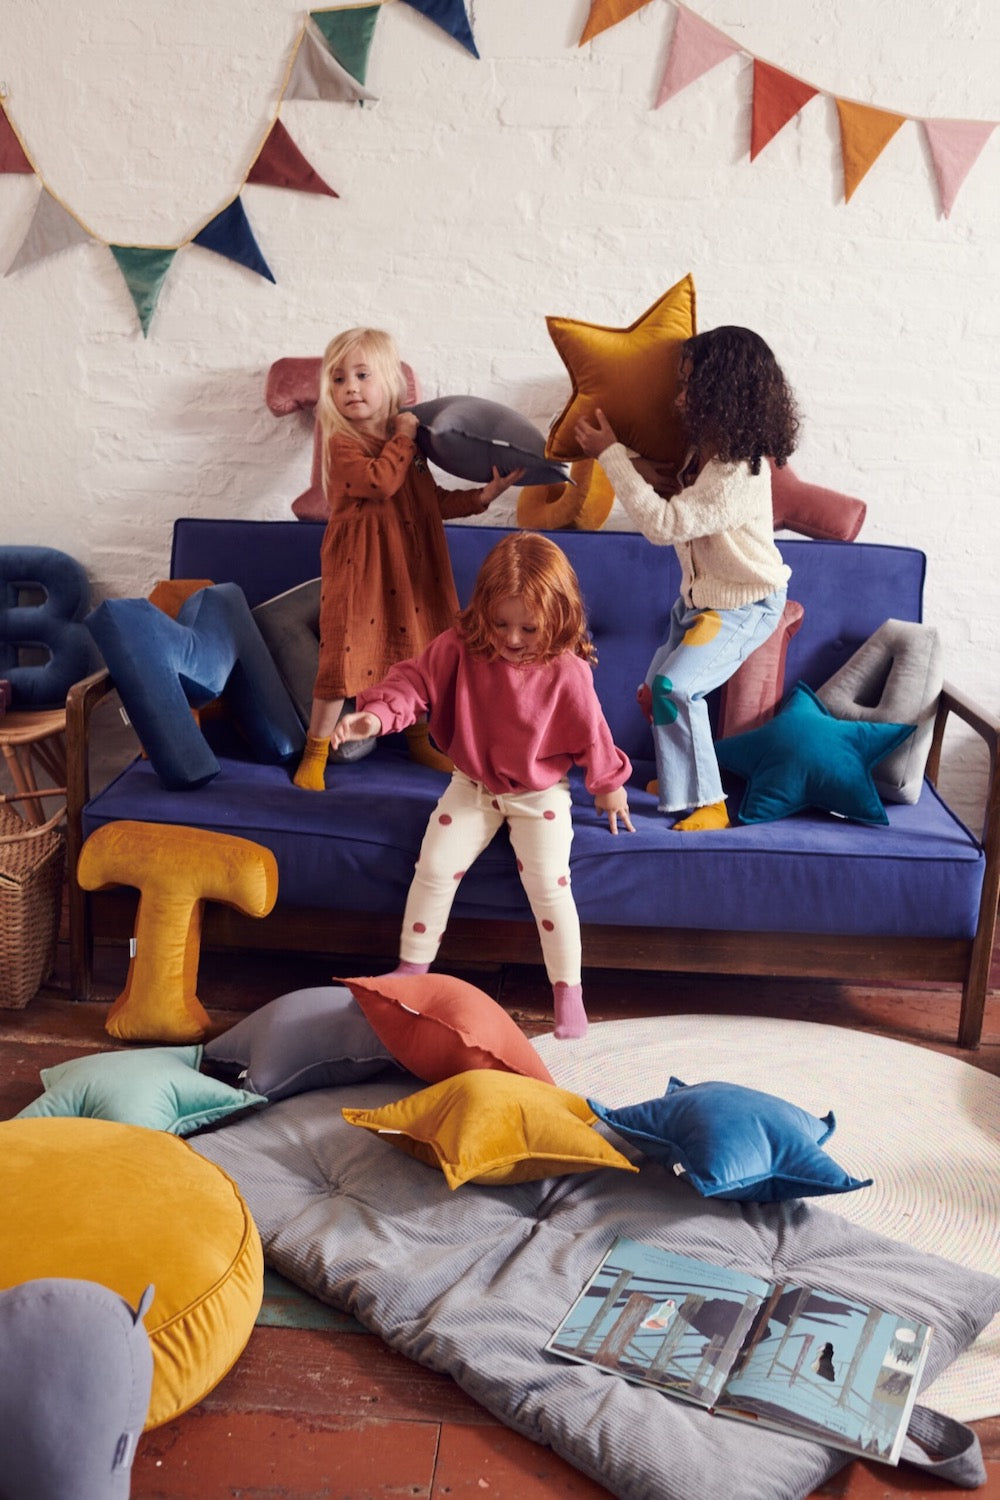 dzieci skaczące na kanapie trzymają w rękach poduszki gwiazdki od bettys home. Na podłodze leży pufa welurowa od bettys home